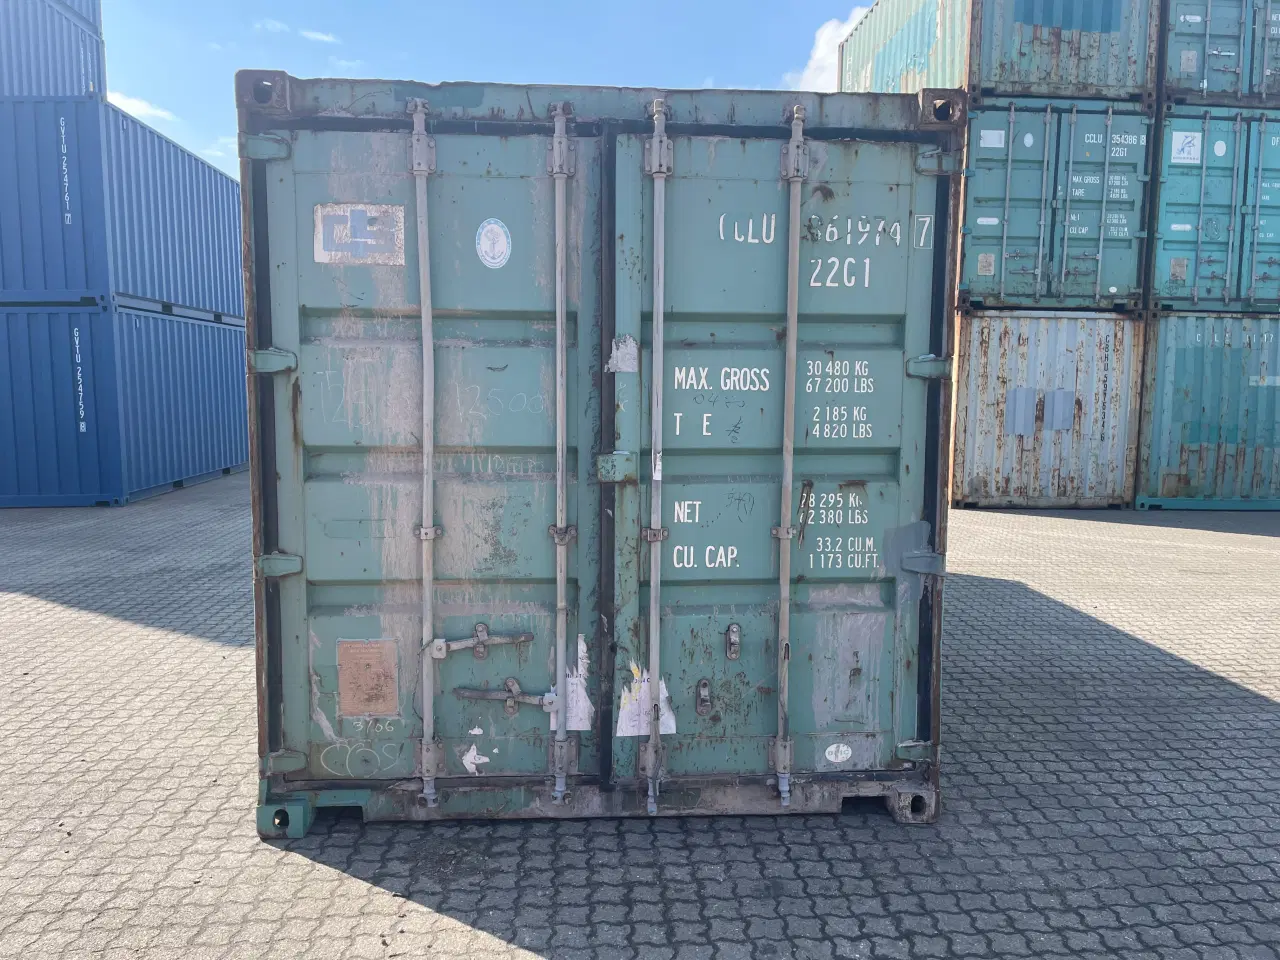 Billede 1 - 20 fods Container- ID: CCLU361974-7